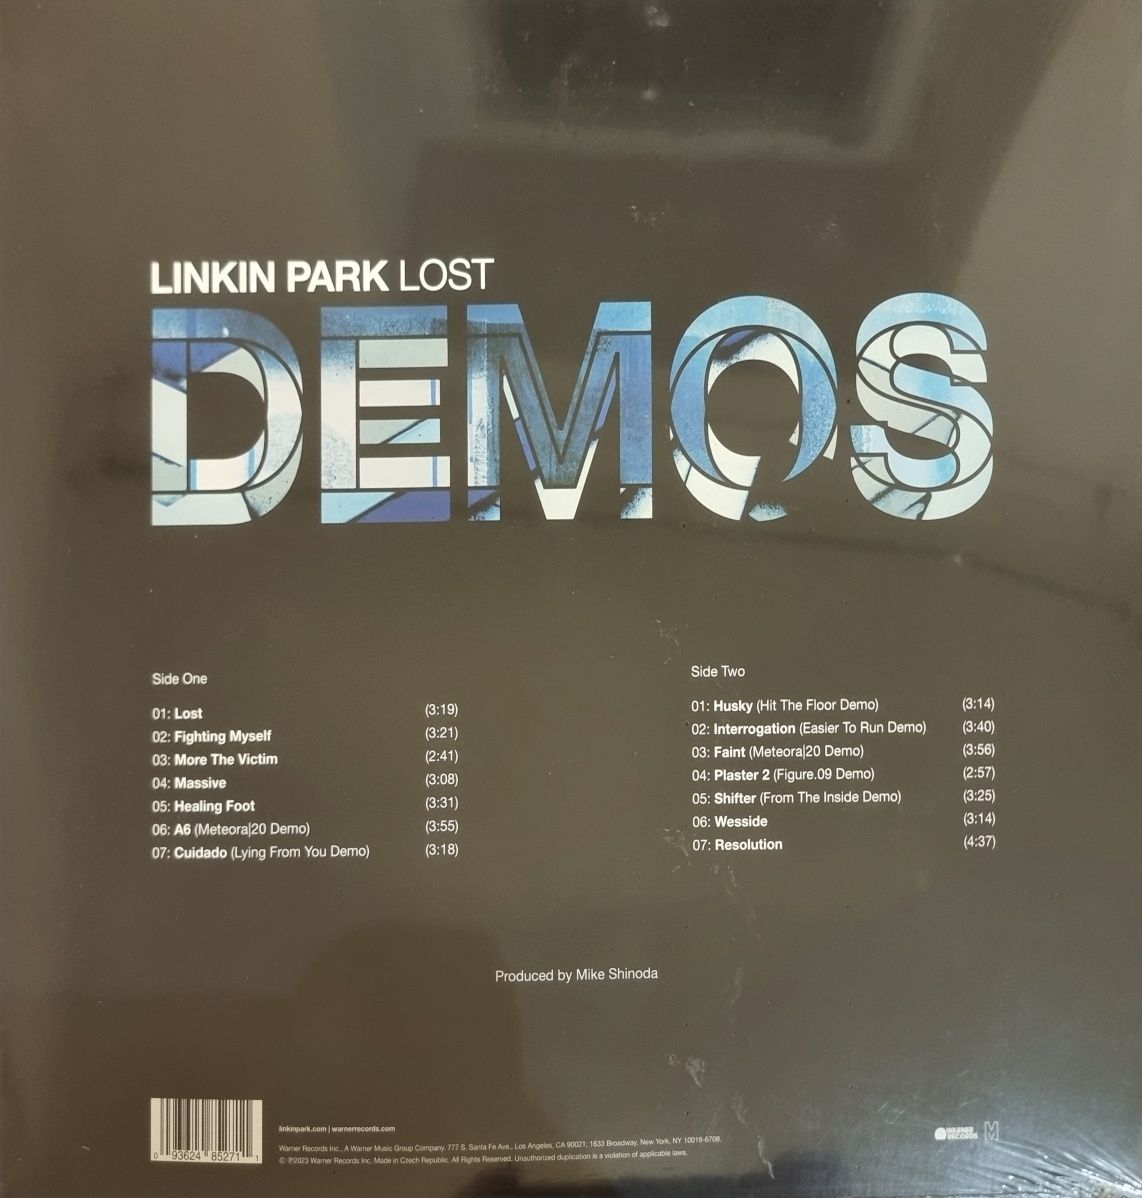 Linkin Park – Lost Demos vinyl